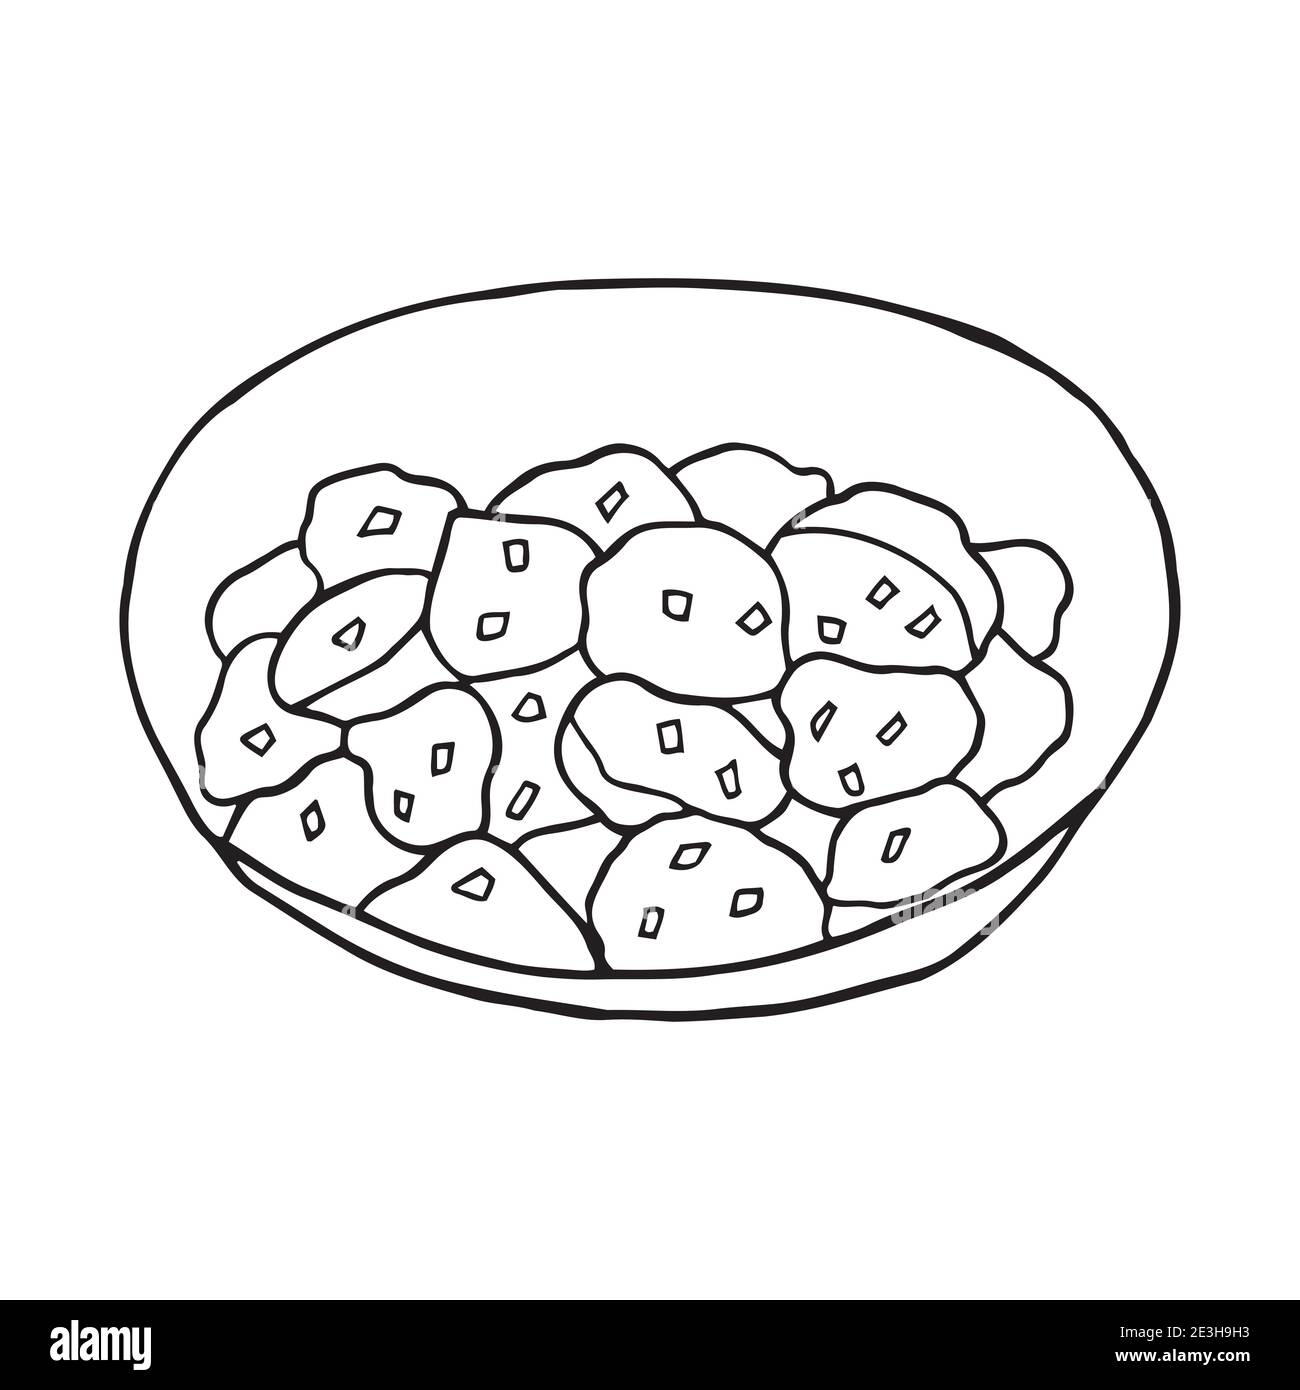 Vektor Hand gezeichnete Doodle Schwabischer kartoffelsalat. Deutsche Küche Gericht. Design Skizzenelement für Menü Café, Restaurant, Etikett und Verpackung. Stock Vektor